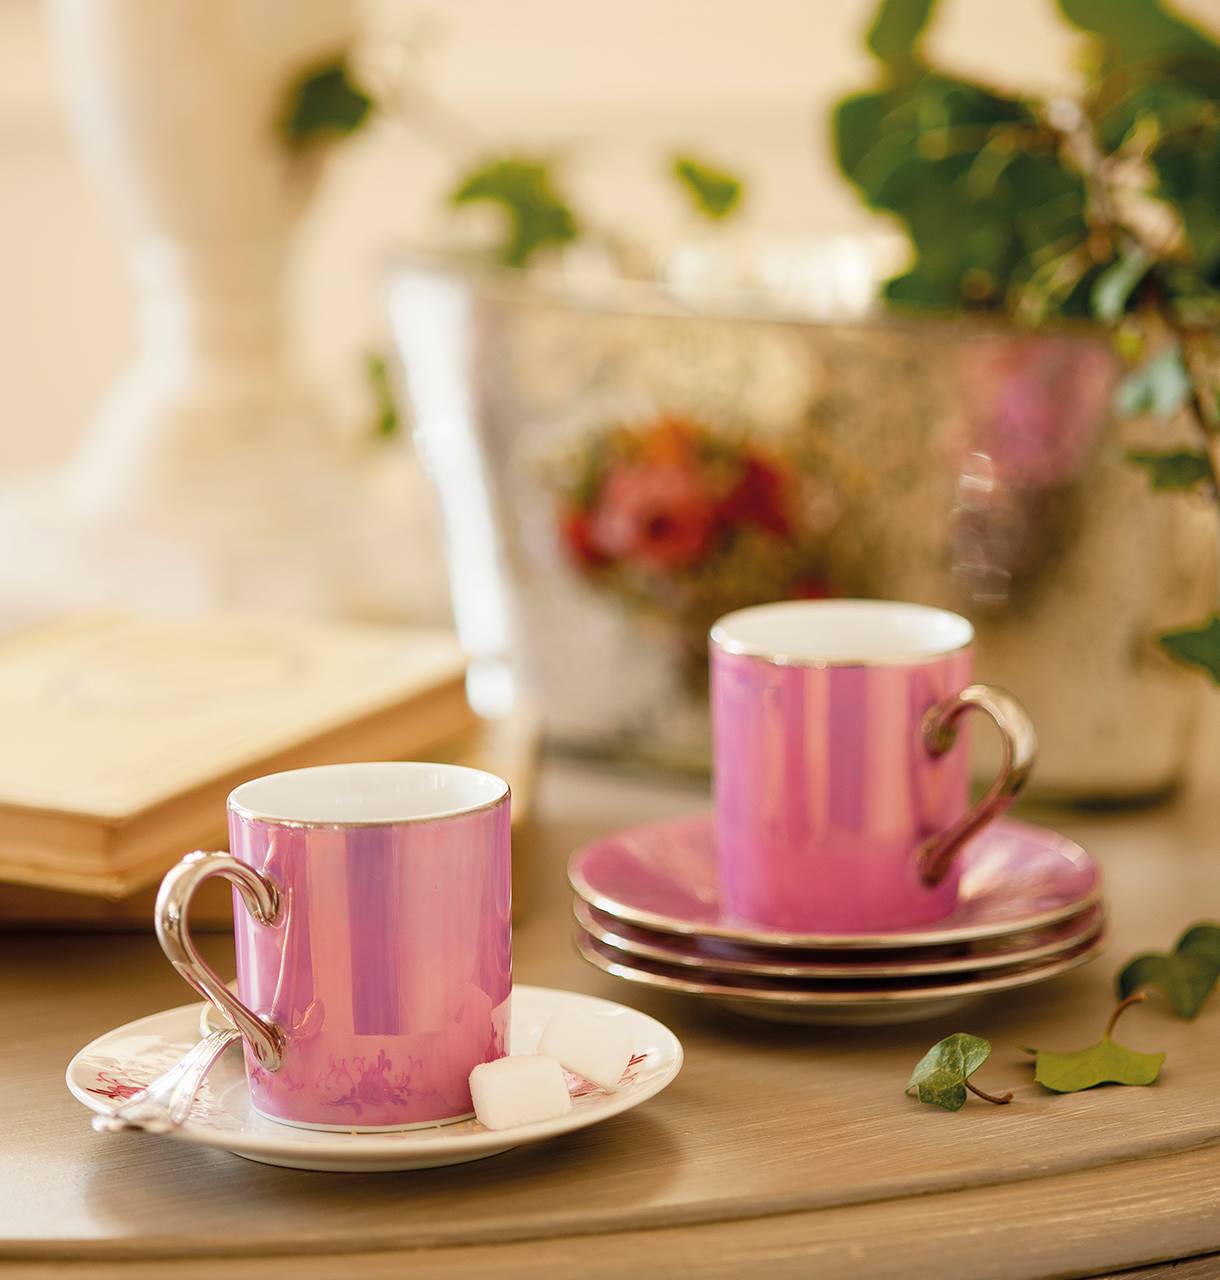 Detalle de tazas de café de color rosa